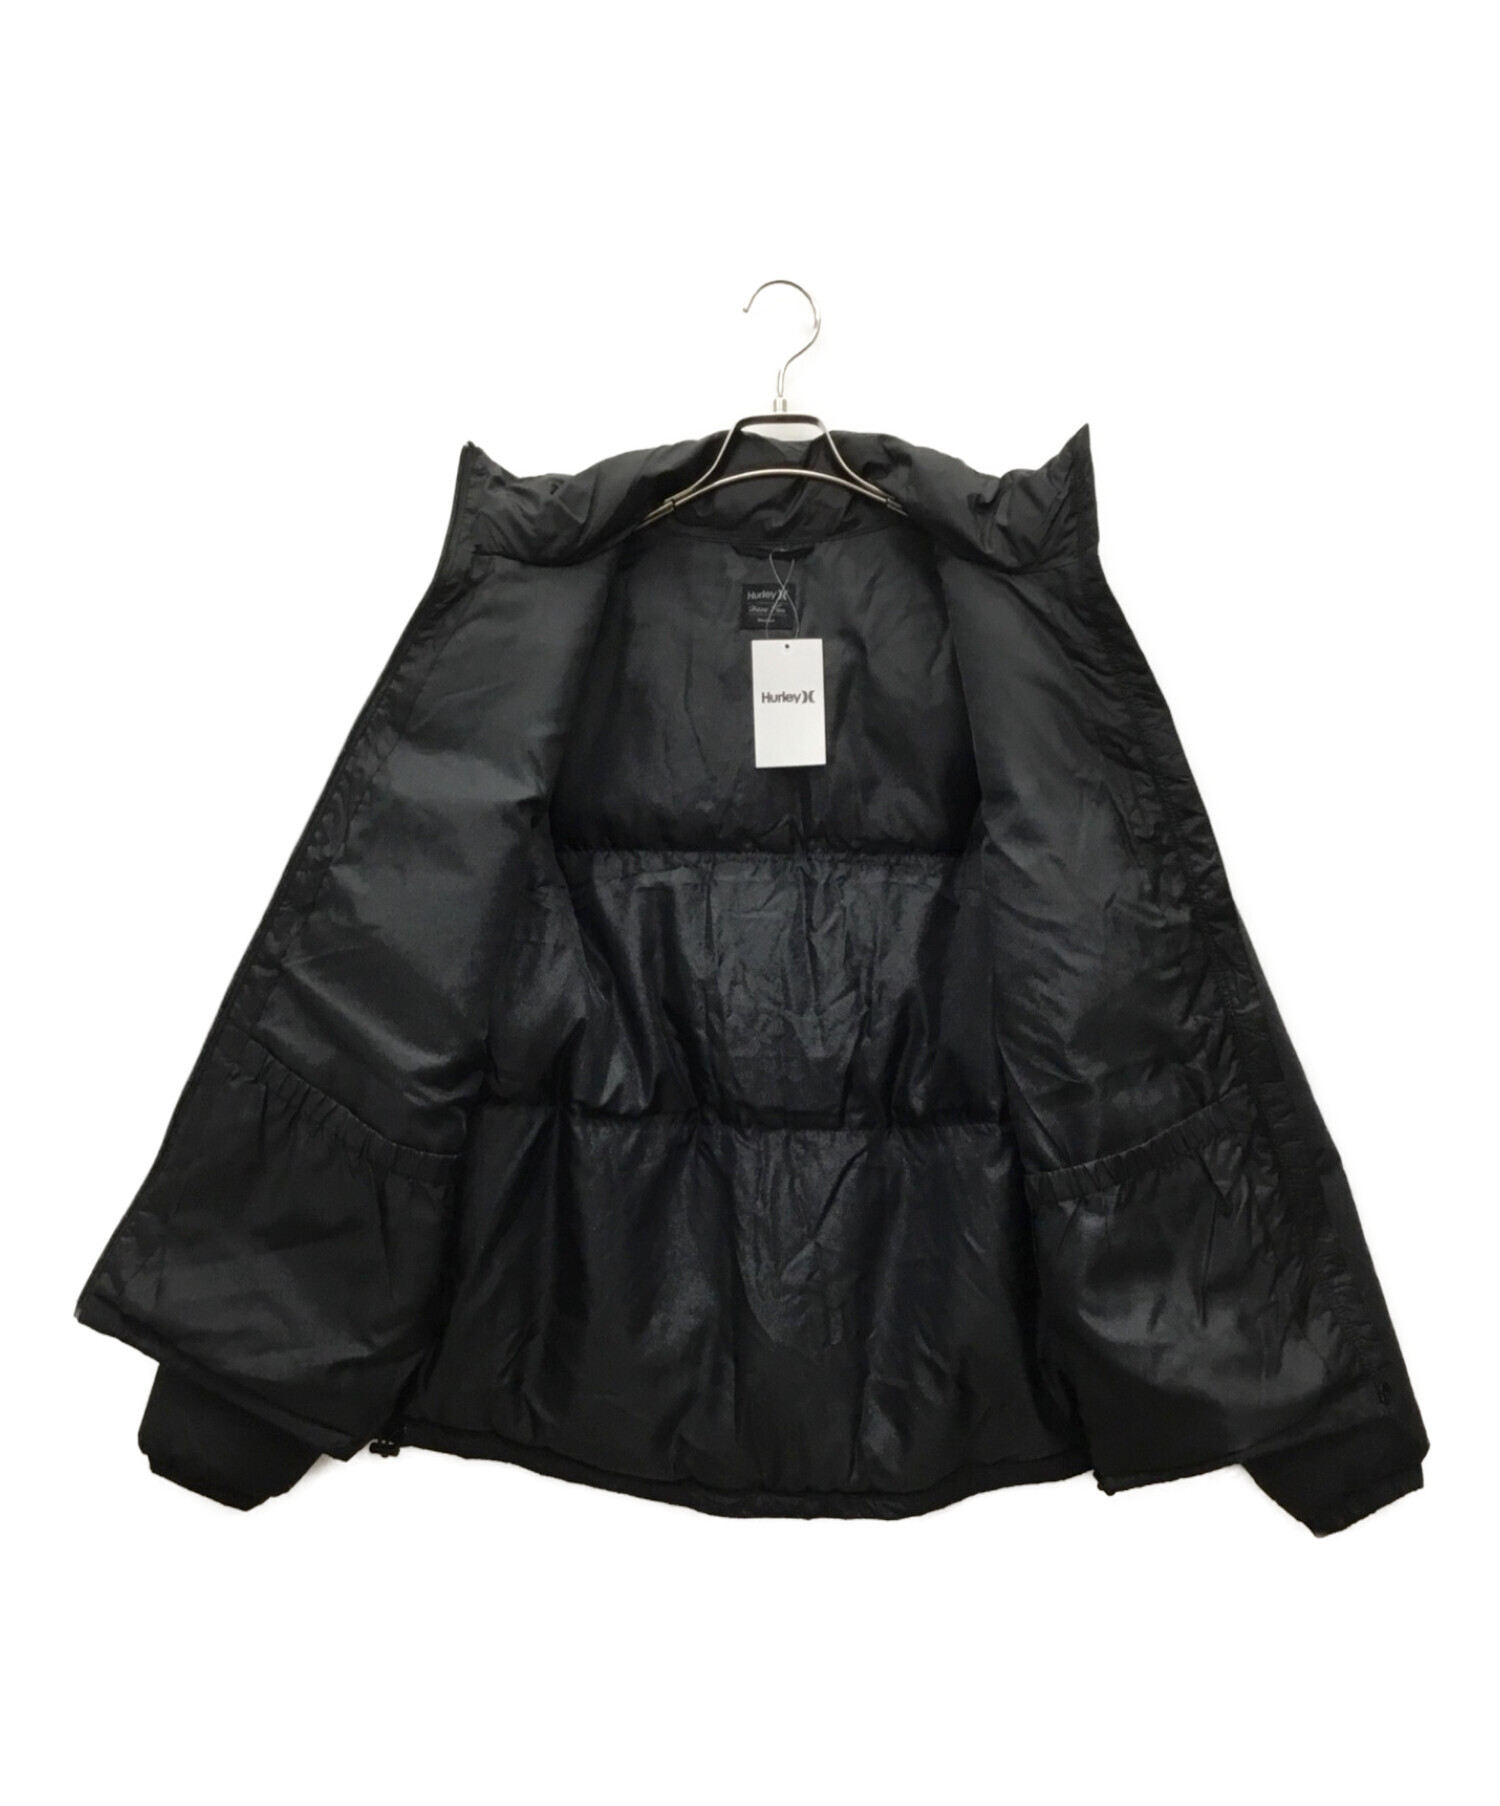 HURLEY (ハーレー) WOVEN PUFFY ジャケット ブラック サイズ:M 未使用品